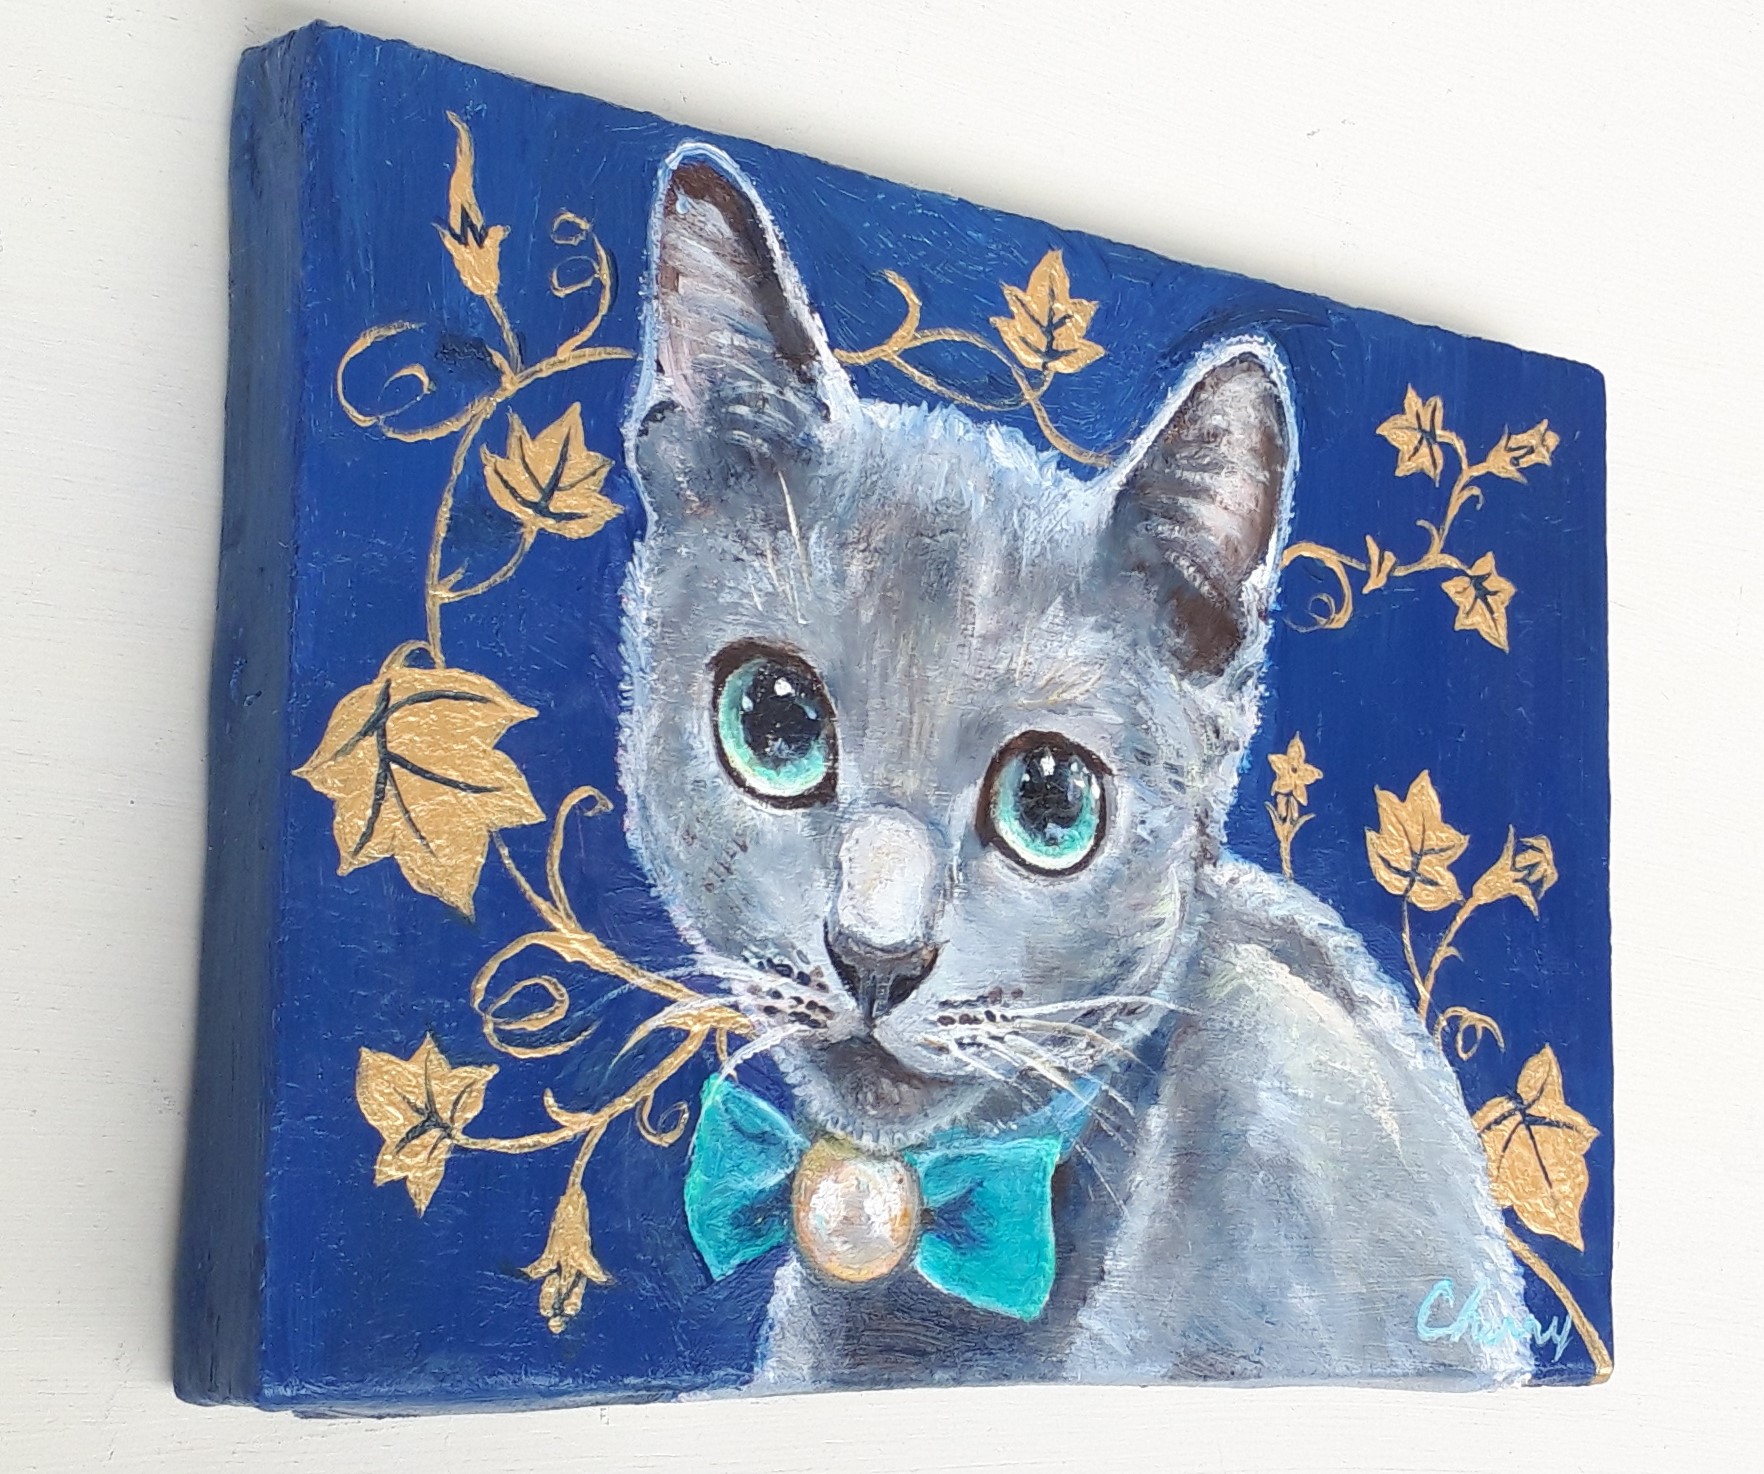 3d Art: Blue Cat! 【3 d 絵画: ロシアン ブルーの猫】-